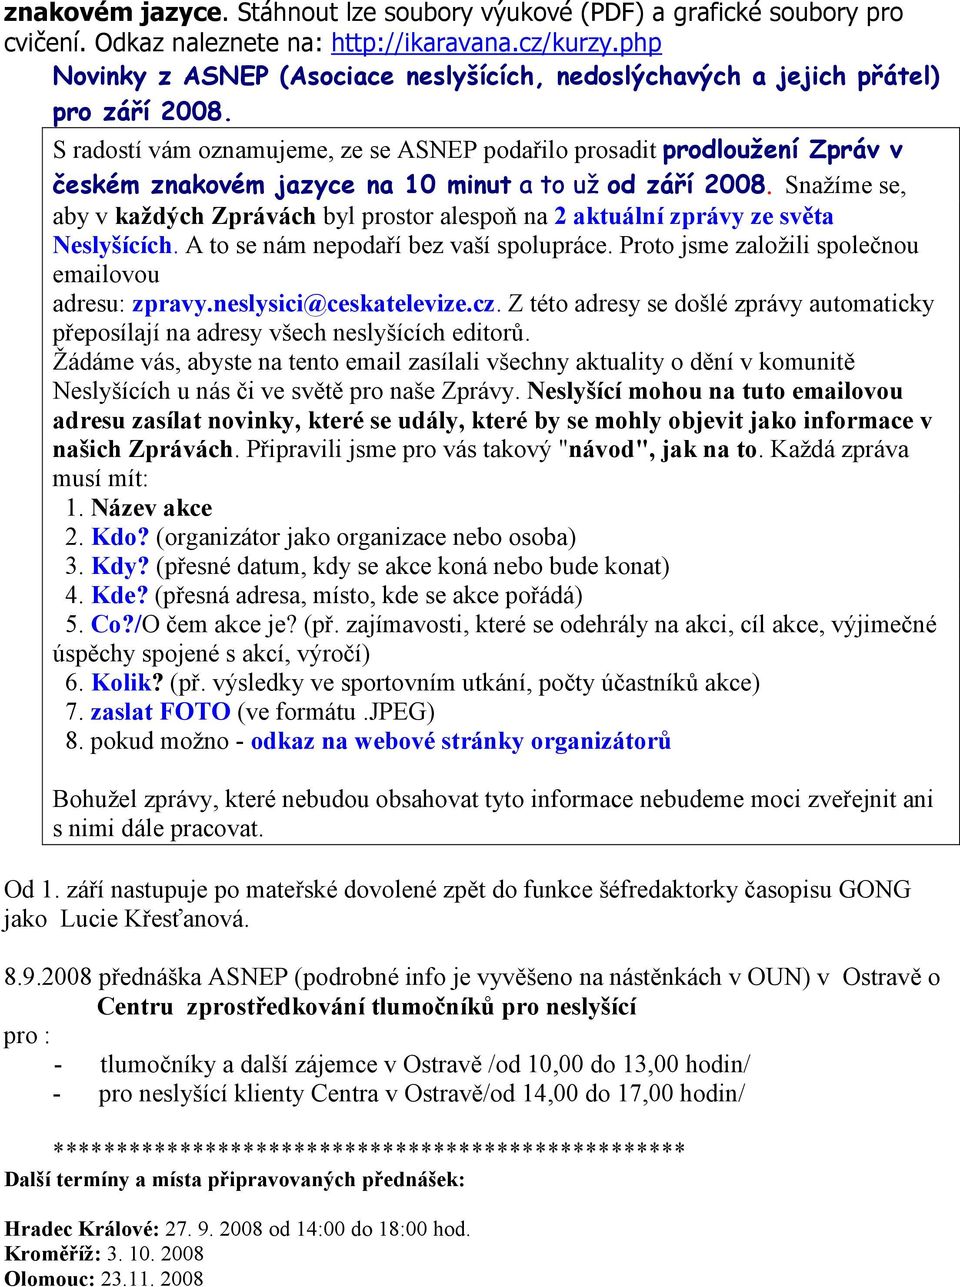 S radostí vám oznamujeme, ze se ASNEP podařilo prosadit prodloužení Zpráv v českém znakovém jazyce na 10 minut a to už od září 2008.